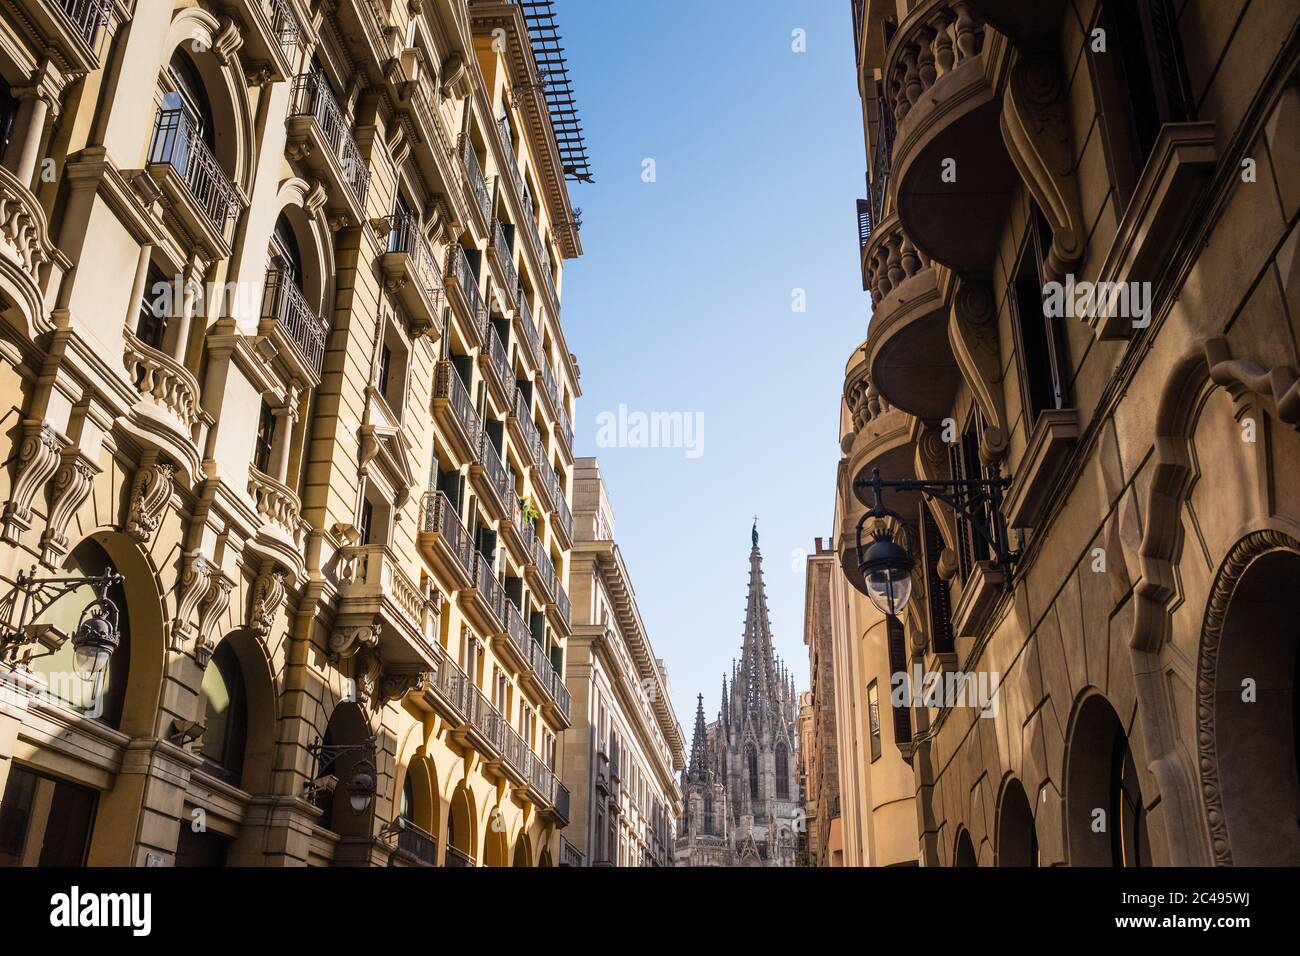 Ein erster Blick auf die Kathedrale von Barcelona kann man bei einem Spaziergang entlang der Straße Dr. Joaquim Pou sehen, einem wirklich einzigartigen Aussichtspunkt, der von den Fassaden von Gebäuden eingerahmt wird Stockfoto